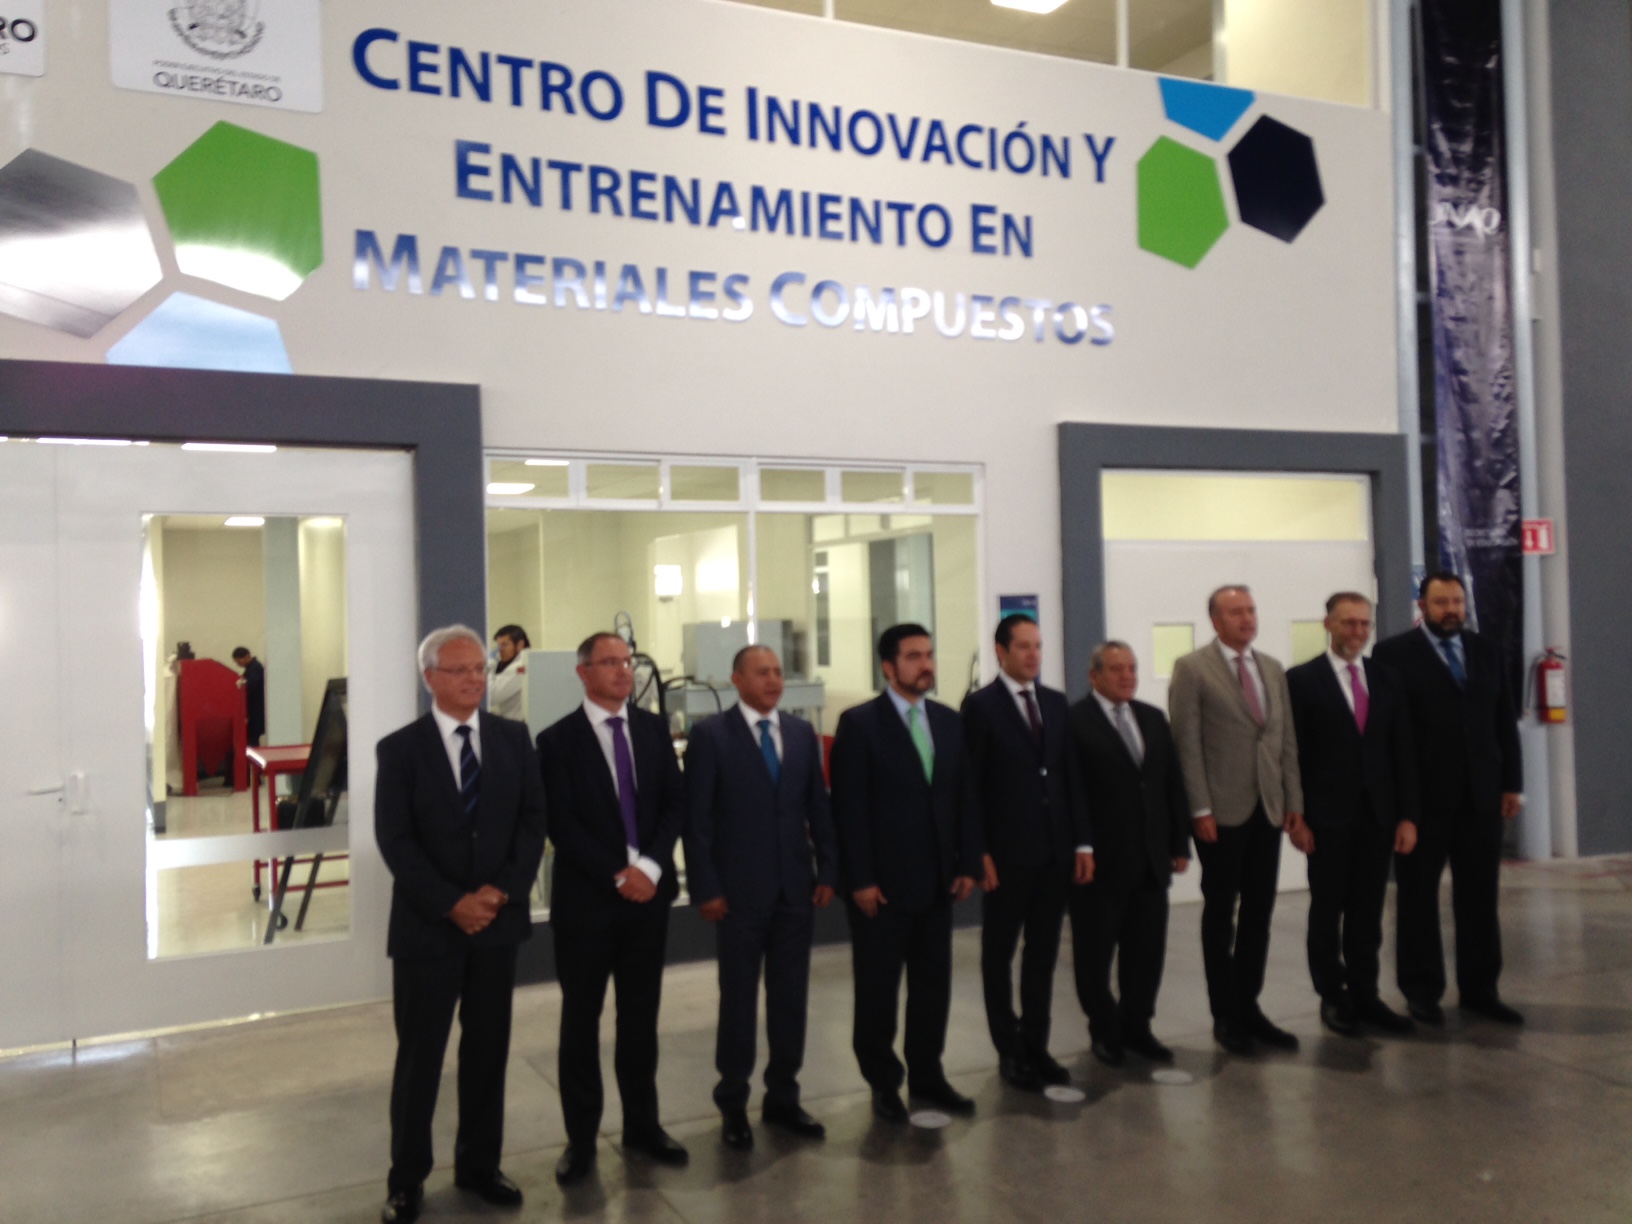  Autoridades inauguran Centro de Innovación y Entrenamiento en Materiales Compuestos de la UNAQ